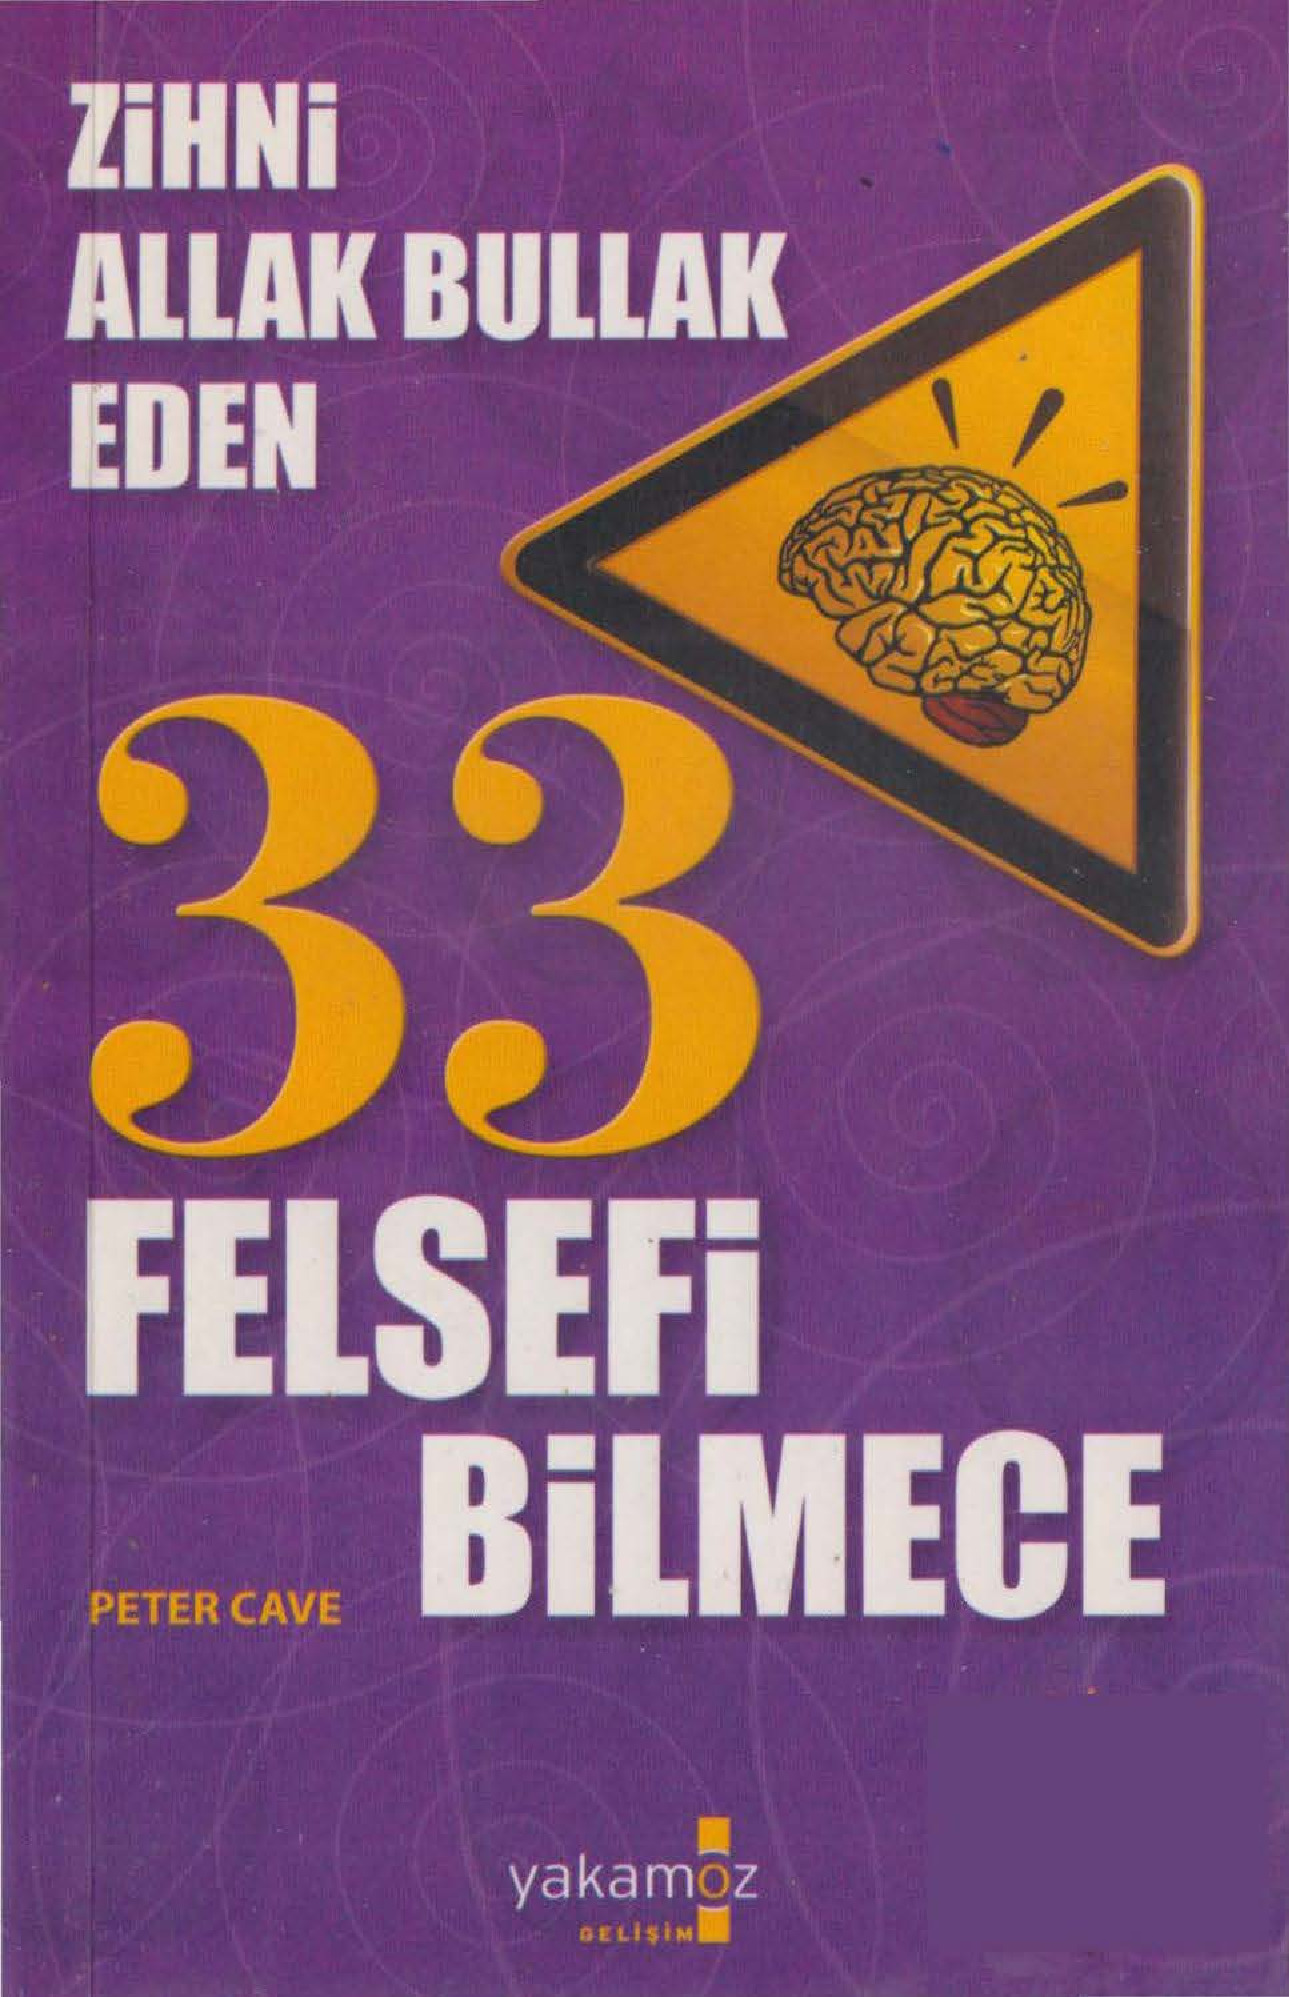 Zehni Allaq Bullaq Eden 33 Felsefi Bilmece-Peter Cave-Deniz Güleşen-2009-252s